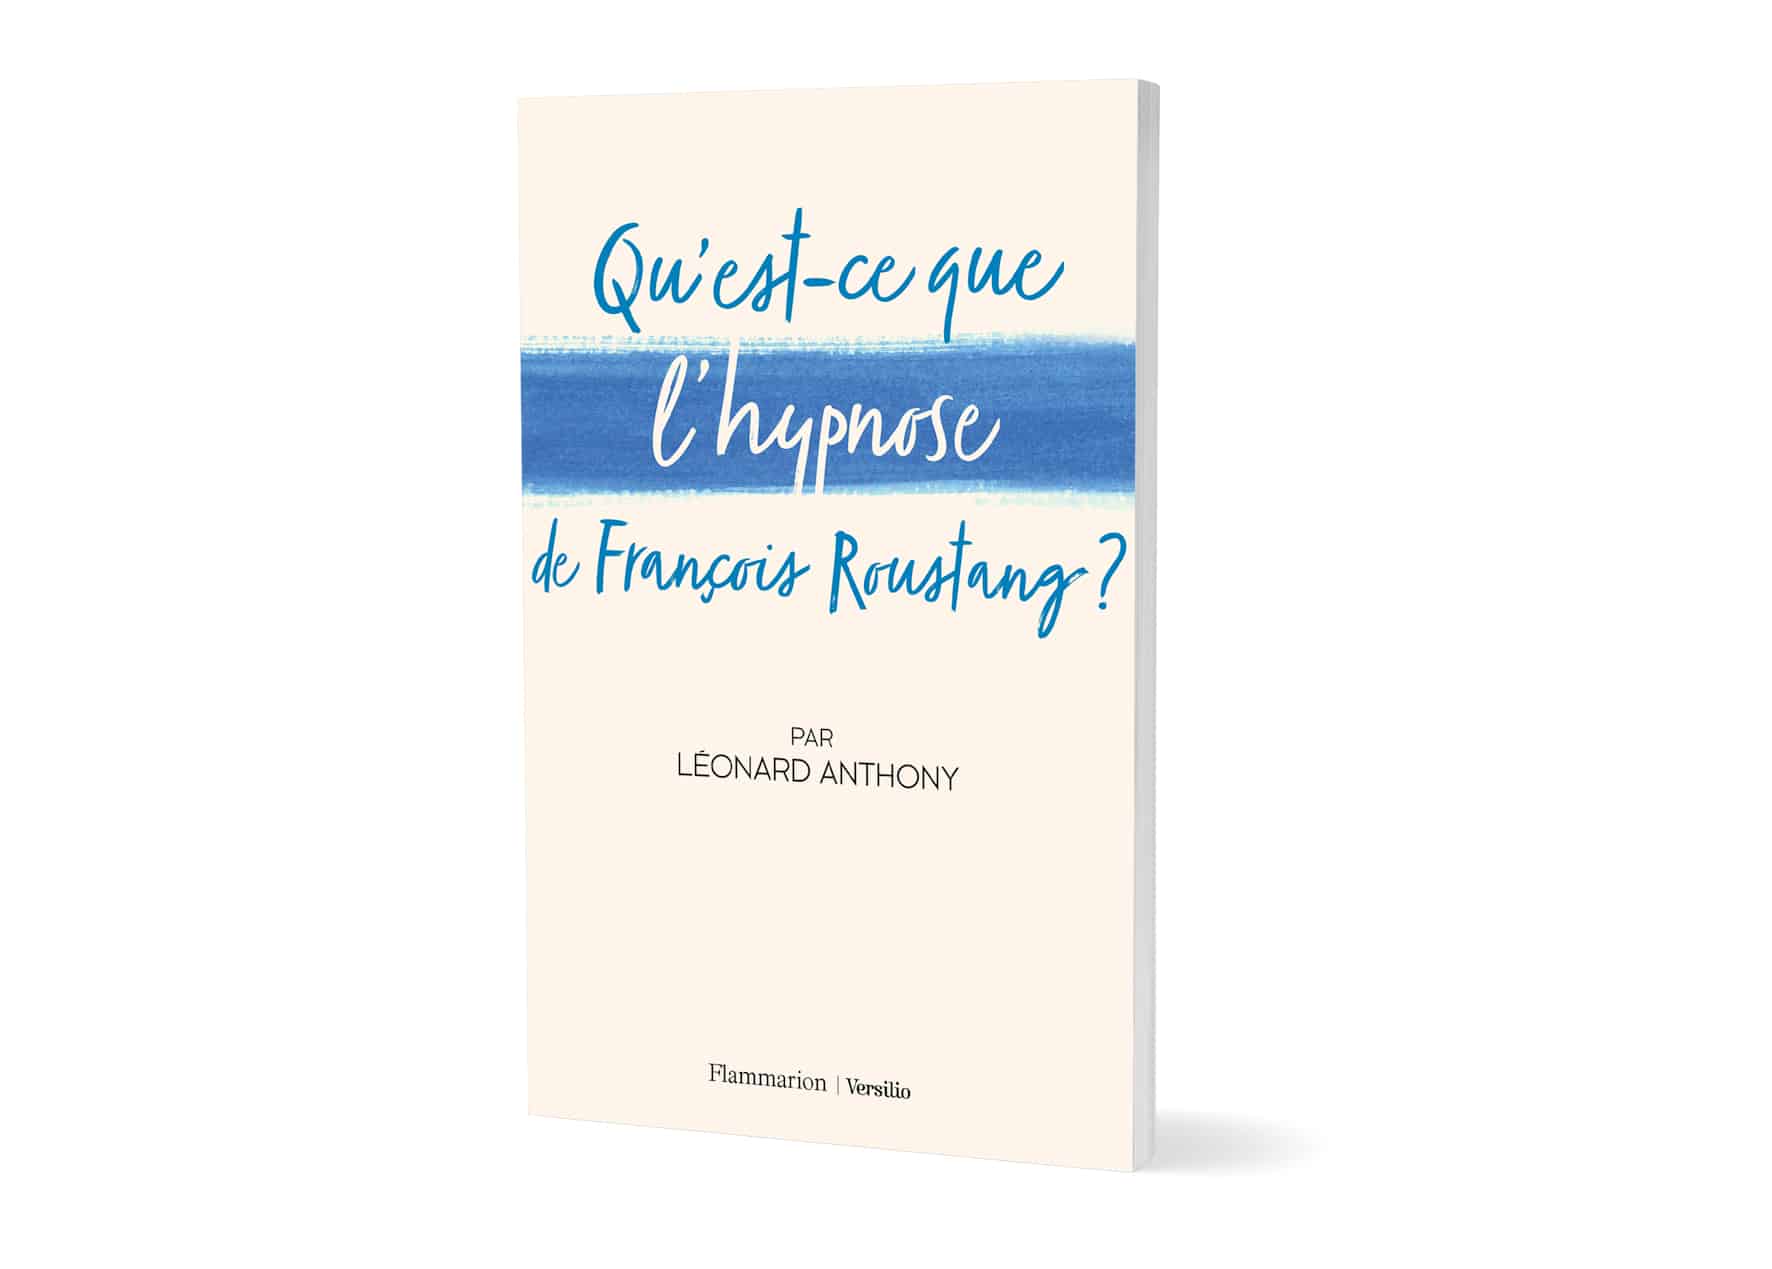 couverture du livre Qu'est ce que l'hypnose François Roustang ? par Léonard Anthony